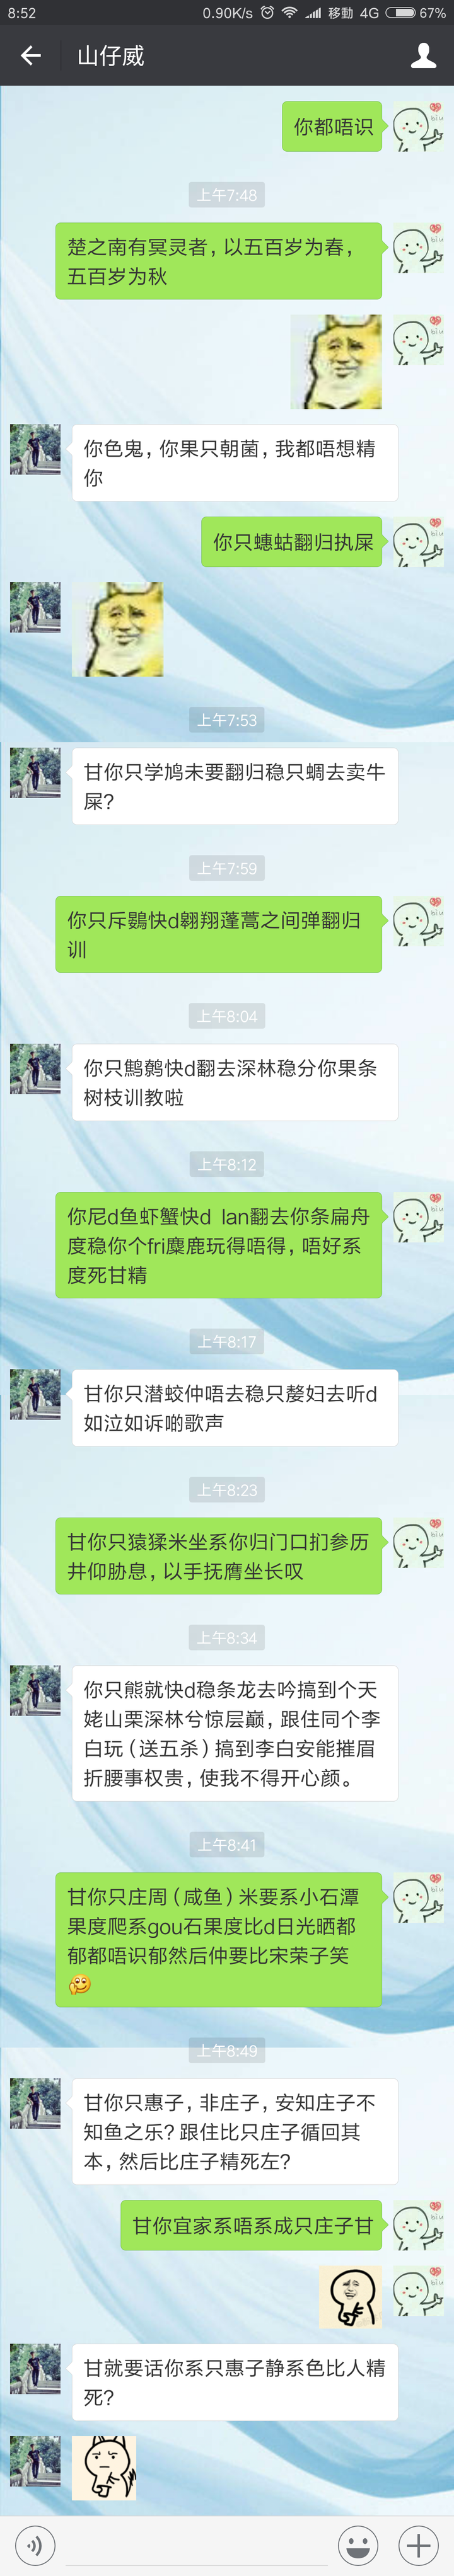 whatsapp中文版，让你聊天更欢乐！